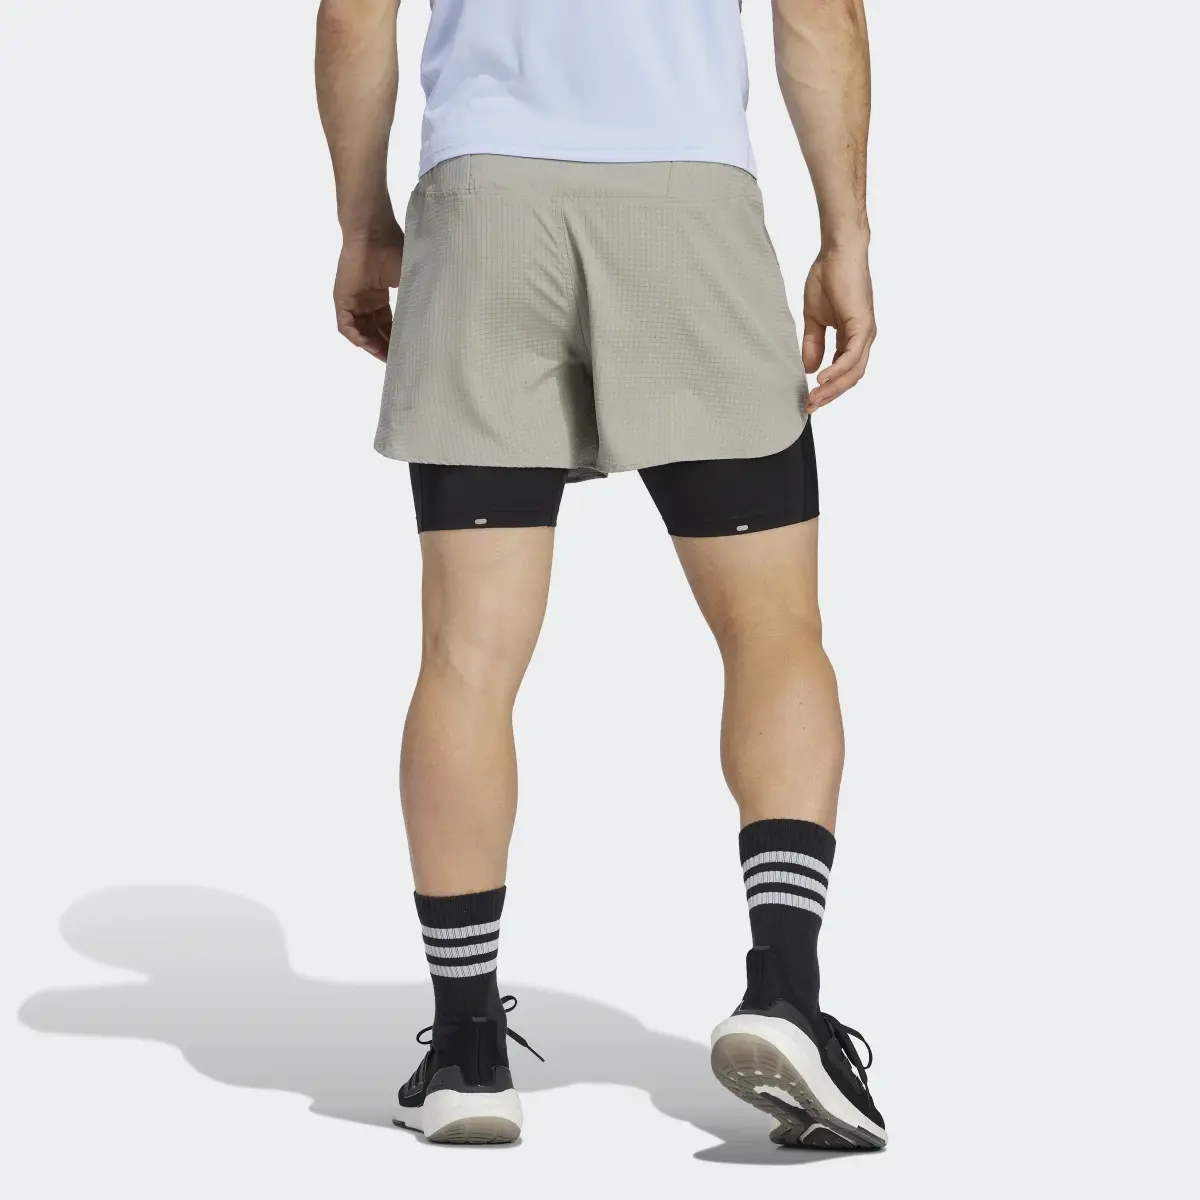 Adidas Shorts Designed 4 Running 2-en-1. 2